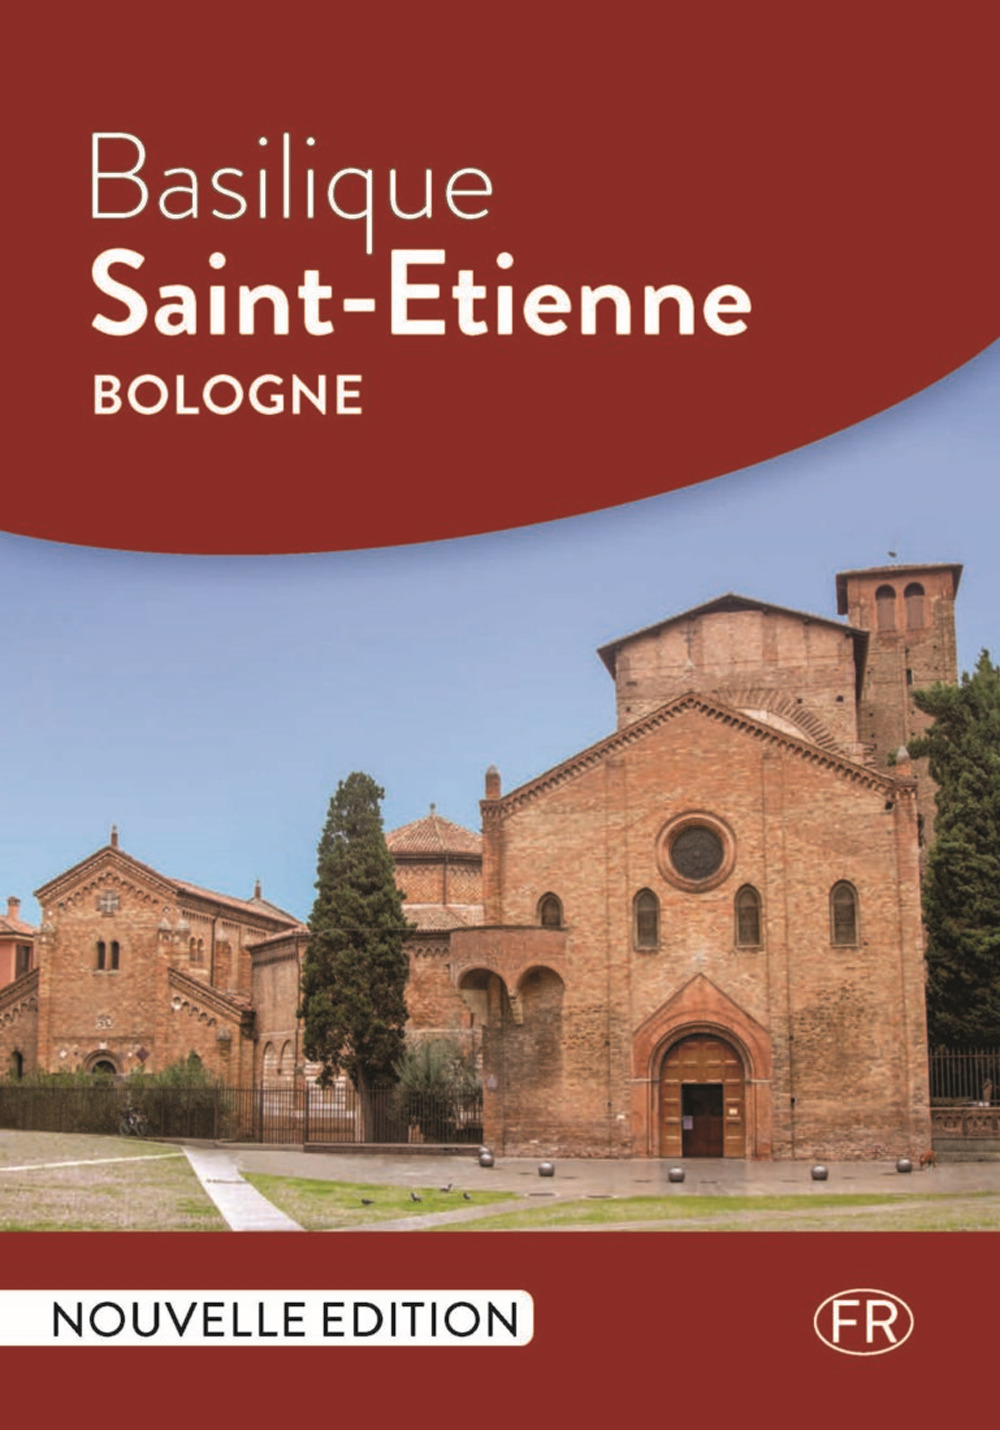 Basilique Saint-Etienne Bologne